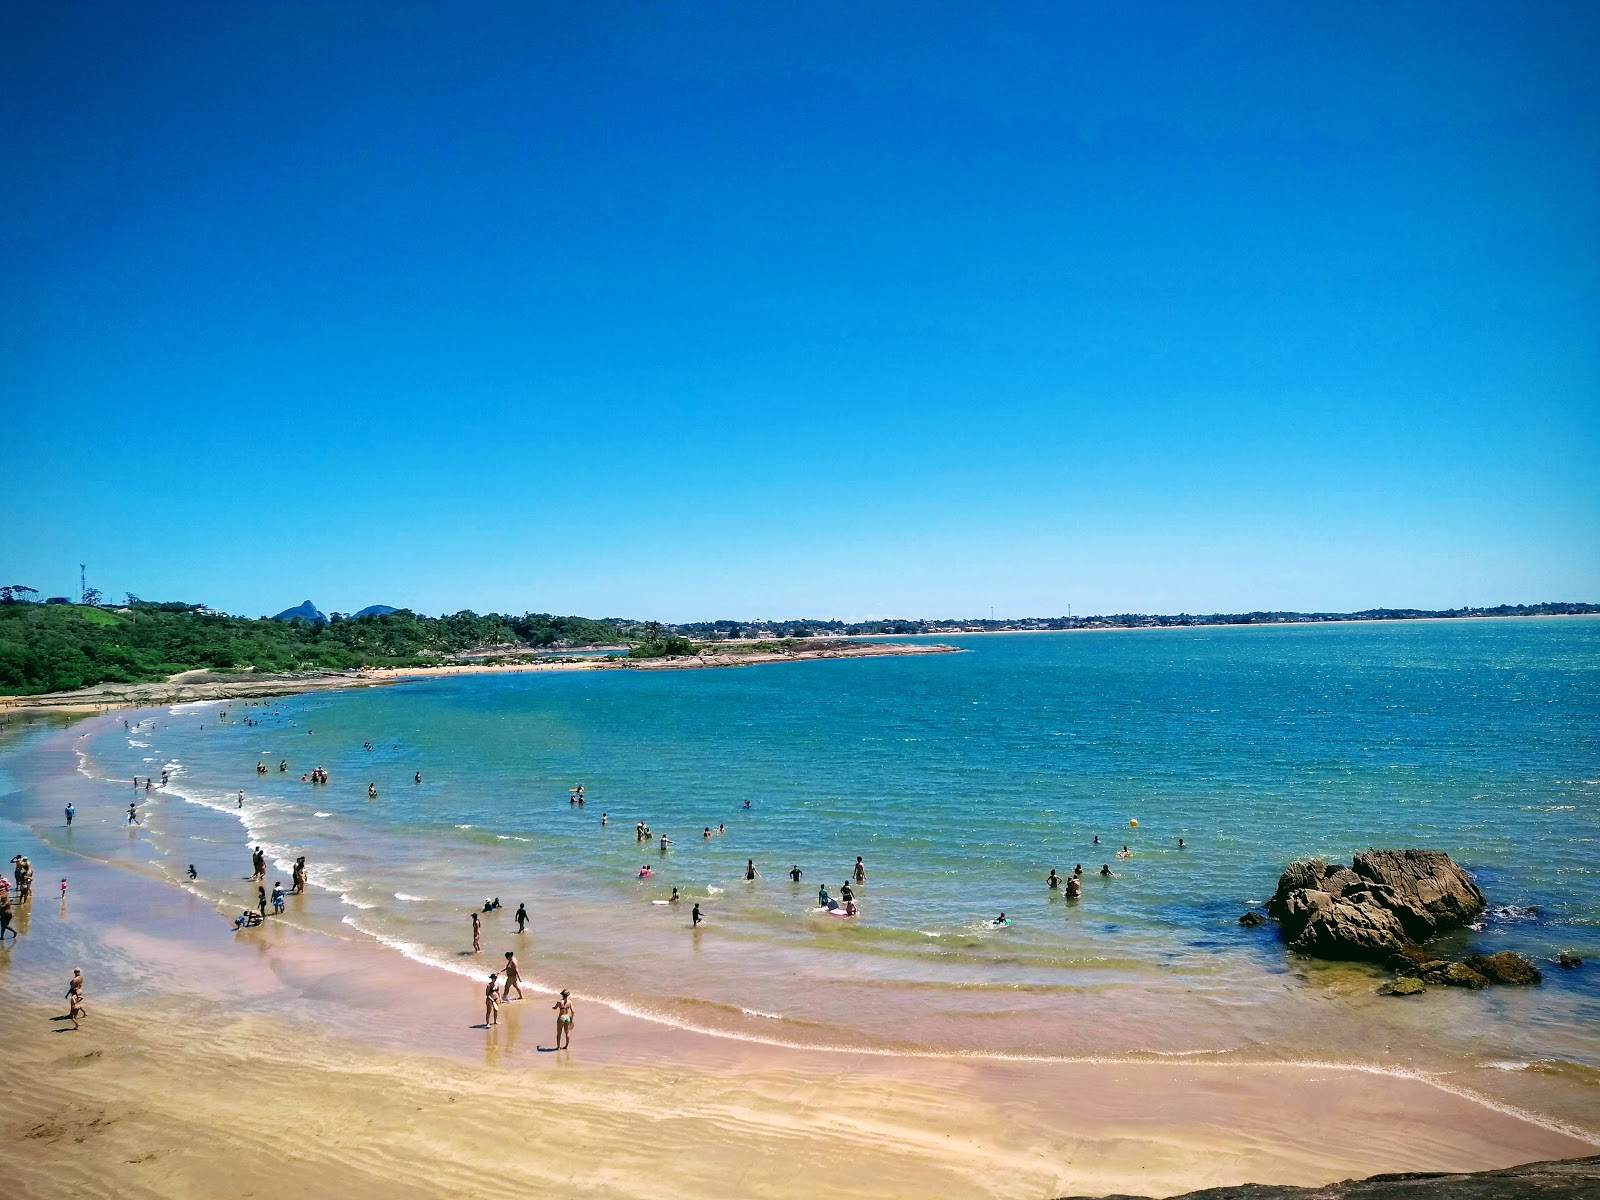 Foto von Praia dos Adventistas - beliebter Ort unter Entspannungskennern